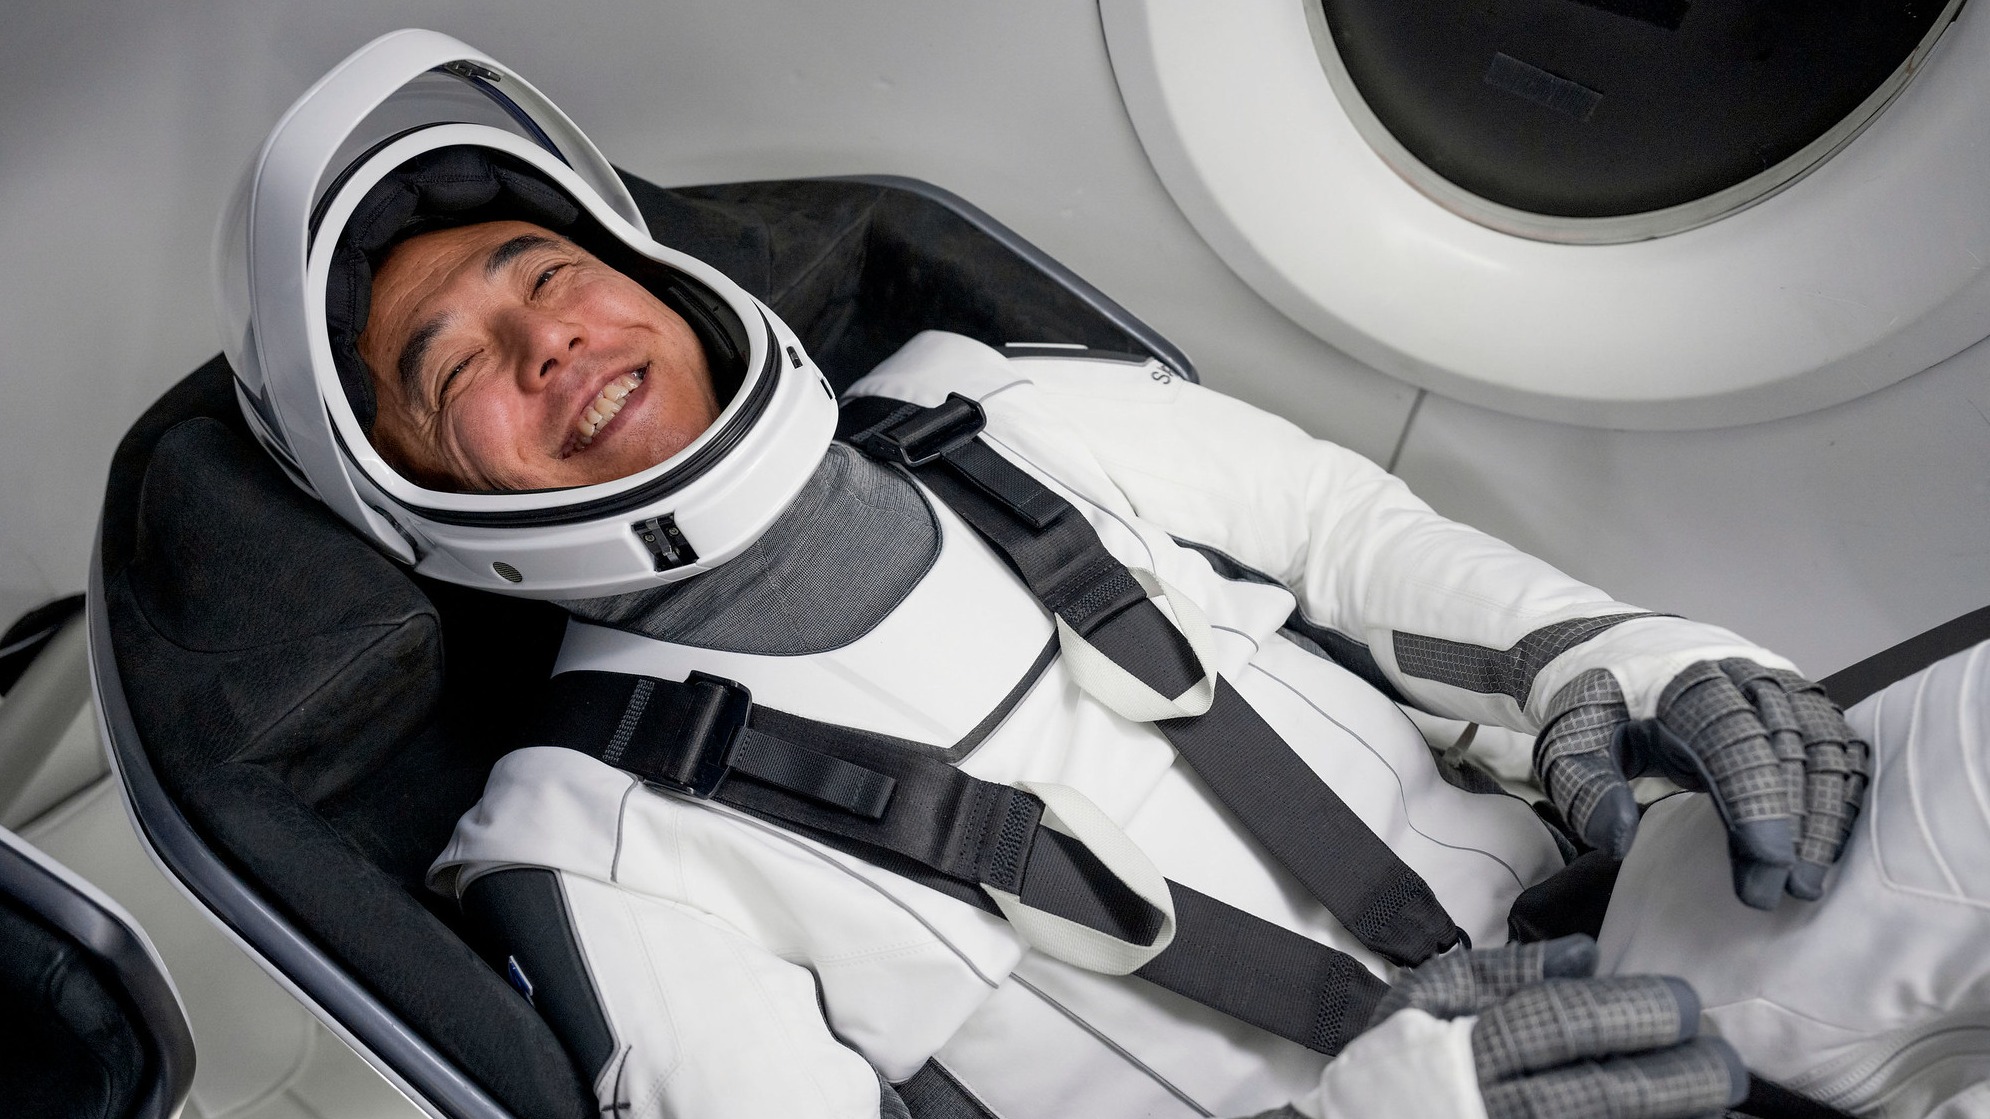 Satoshi Furukawa está acostado en un traje espacial en el asiento de la nave espacial y sonríe.  Aparece una ventana parcialmente circular en la parte superior derecha